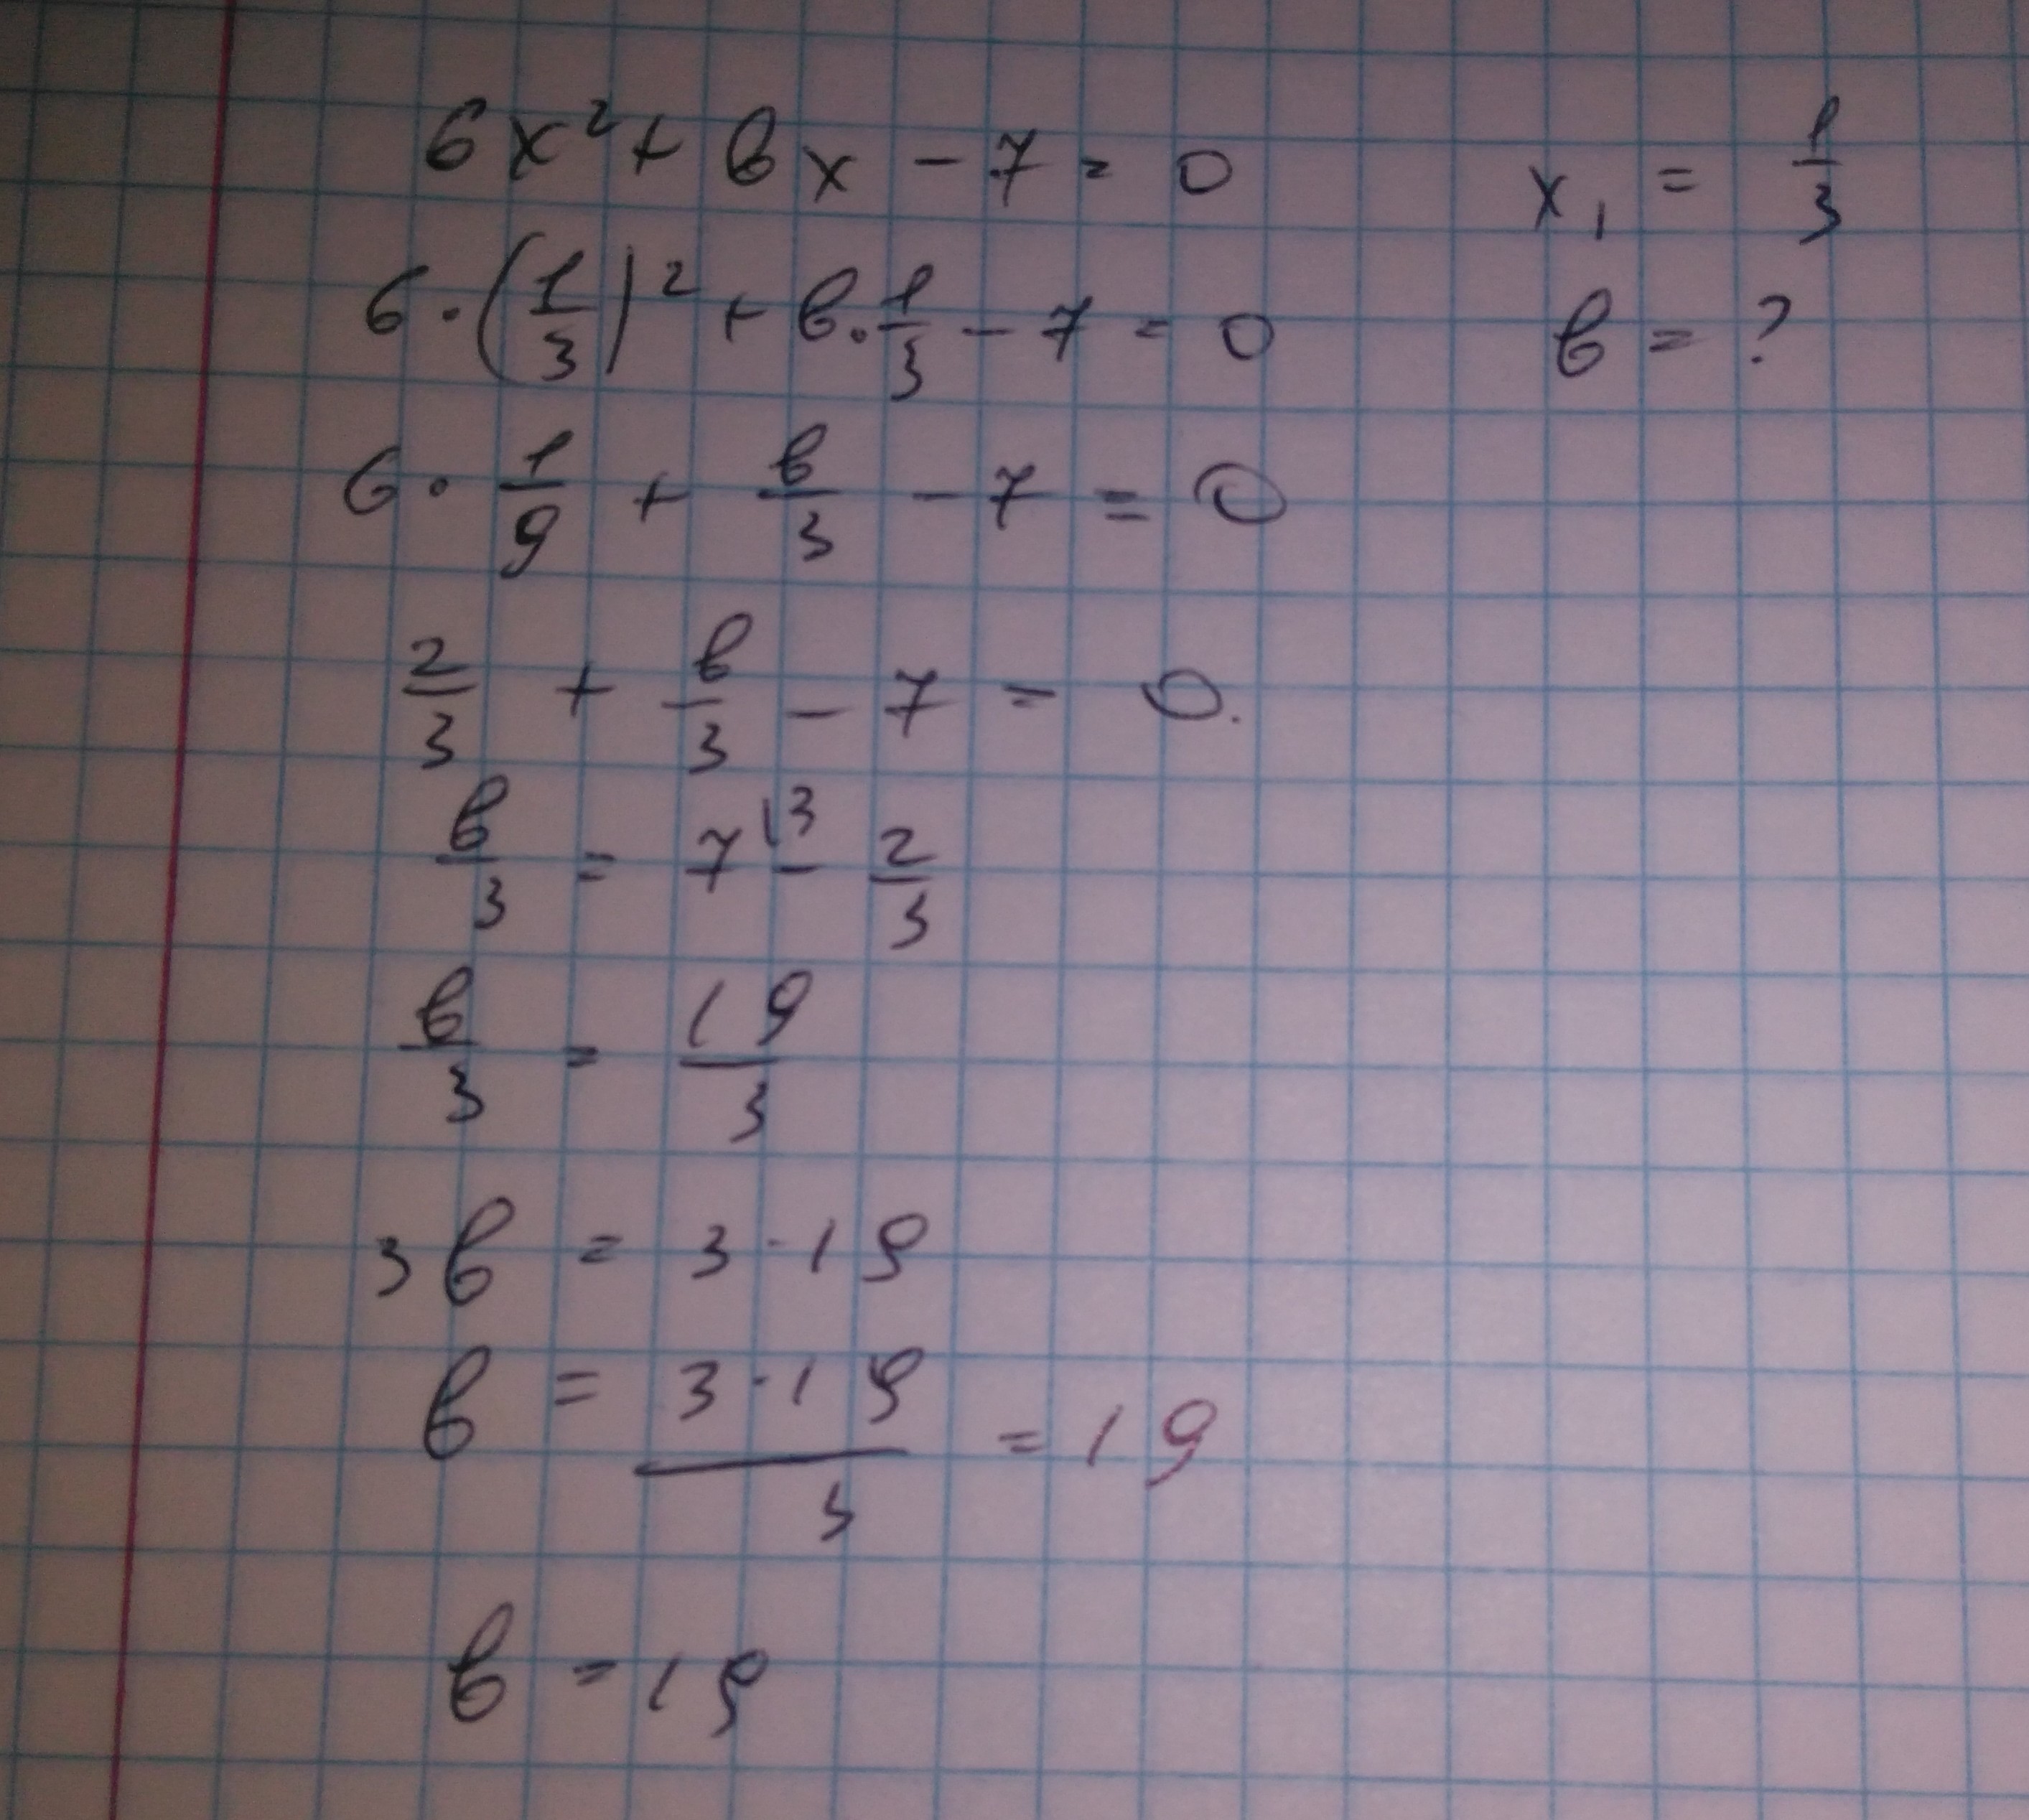 6x 2 2 найти. Число -6 является корнем уравнения 2x+BX-6. Число -6 является корнем уравнения 2x+BX-6 0 Найдите. Число 0 6 является корнем уравнения. Число 4 является корнем уравнения 3x+BX+4.